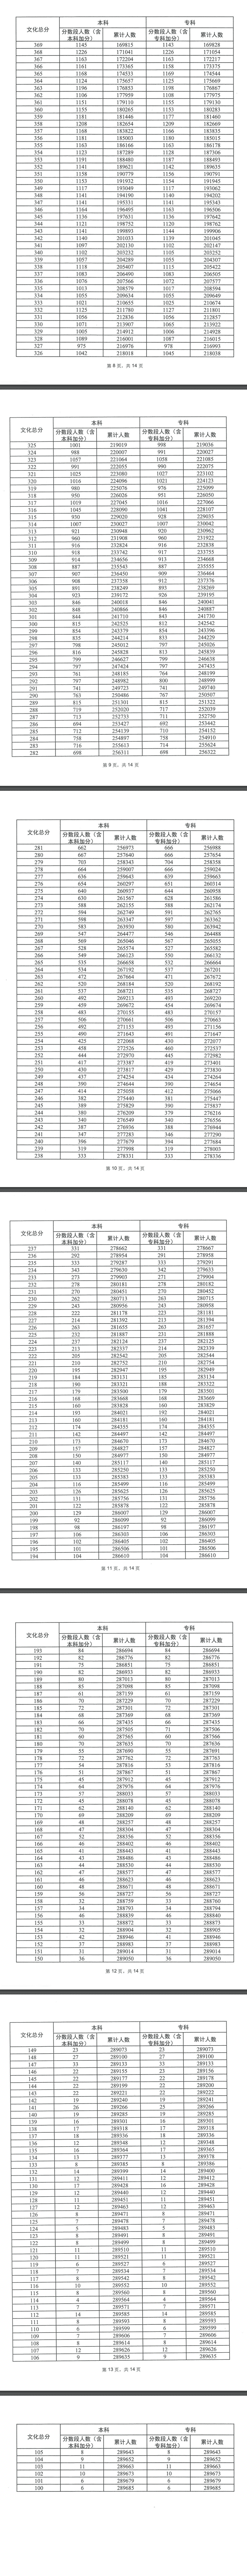 2023年广东高考一分一段表公布 成绩排名